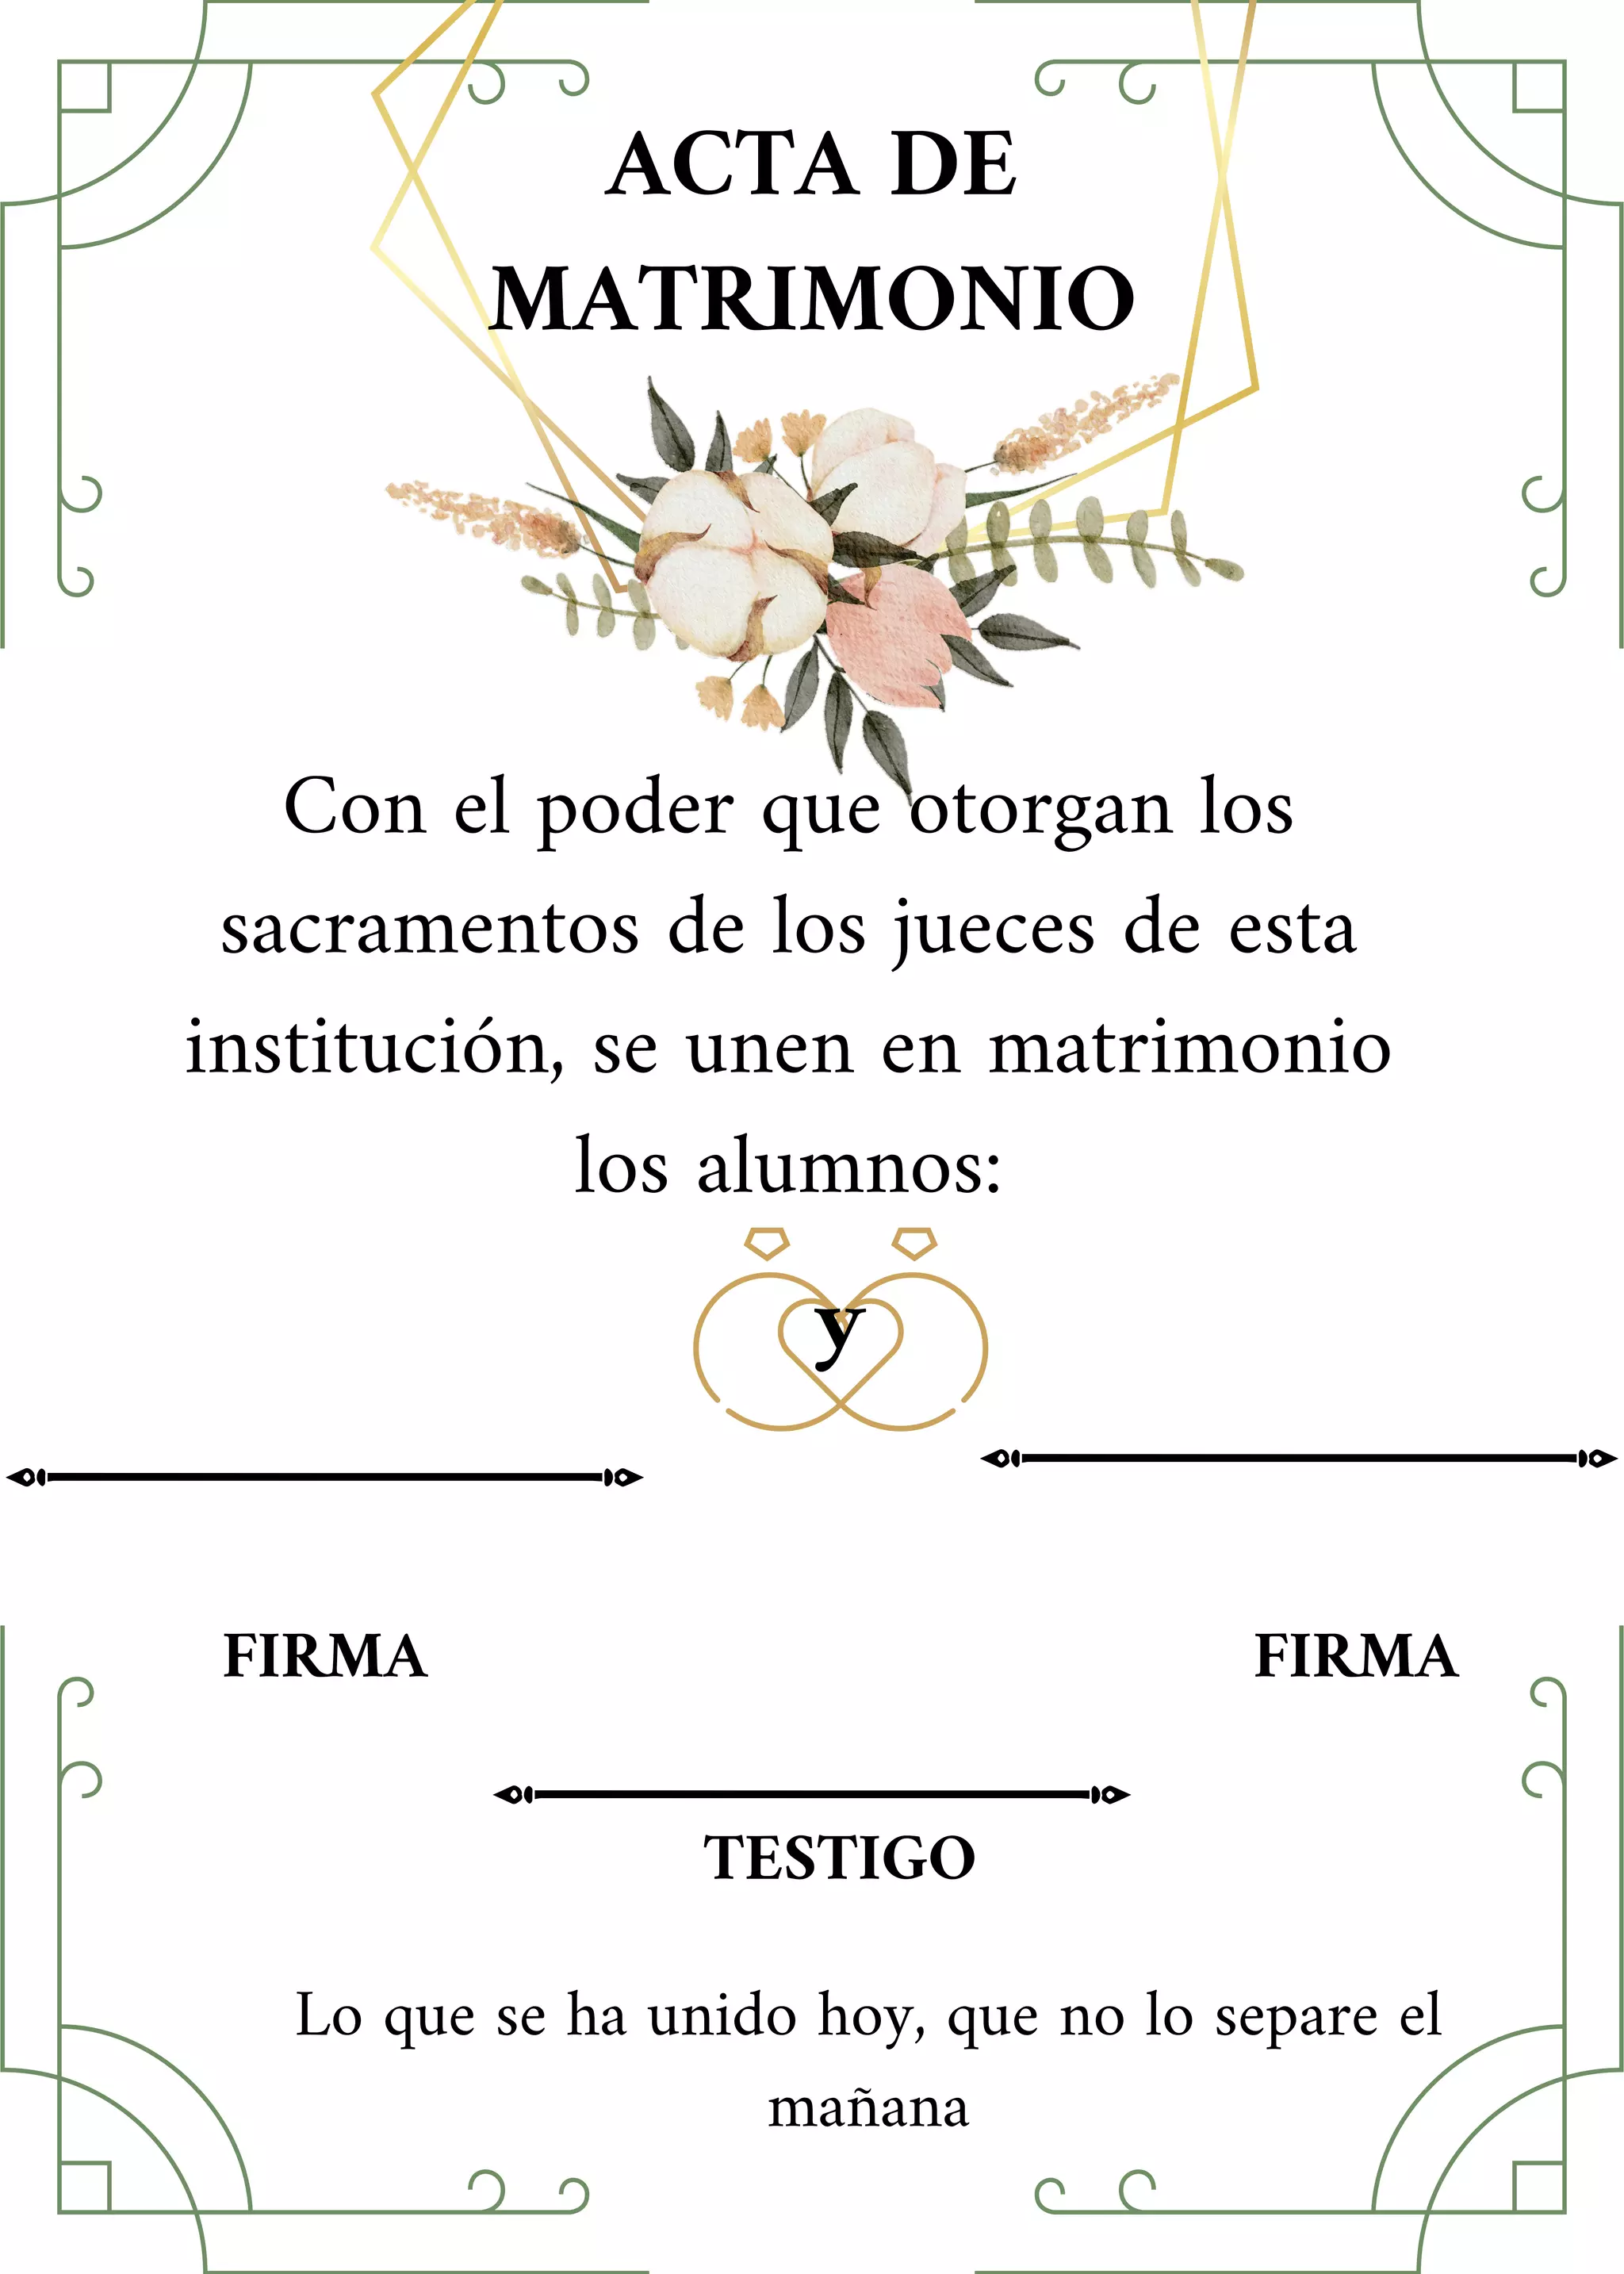 Acta De Matrimoniopdf 3678